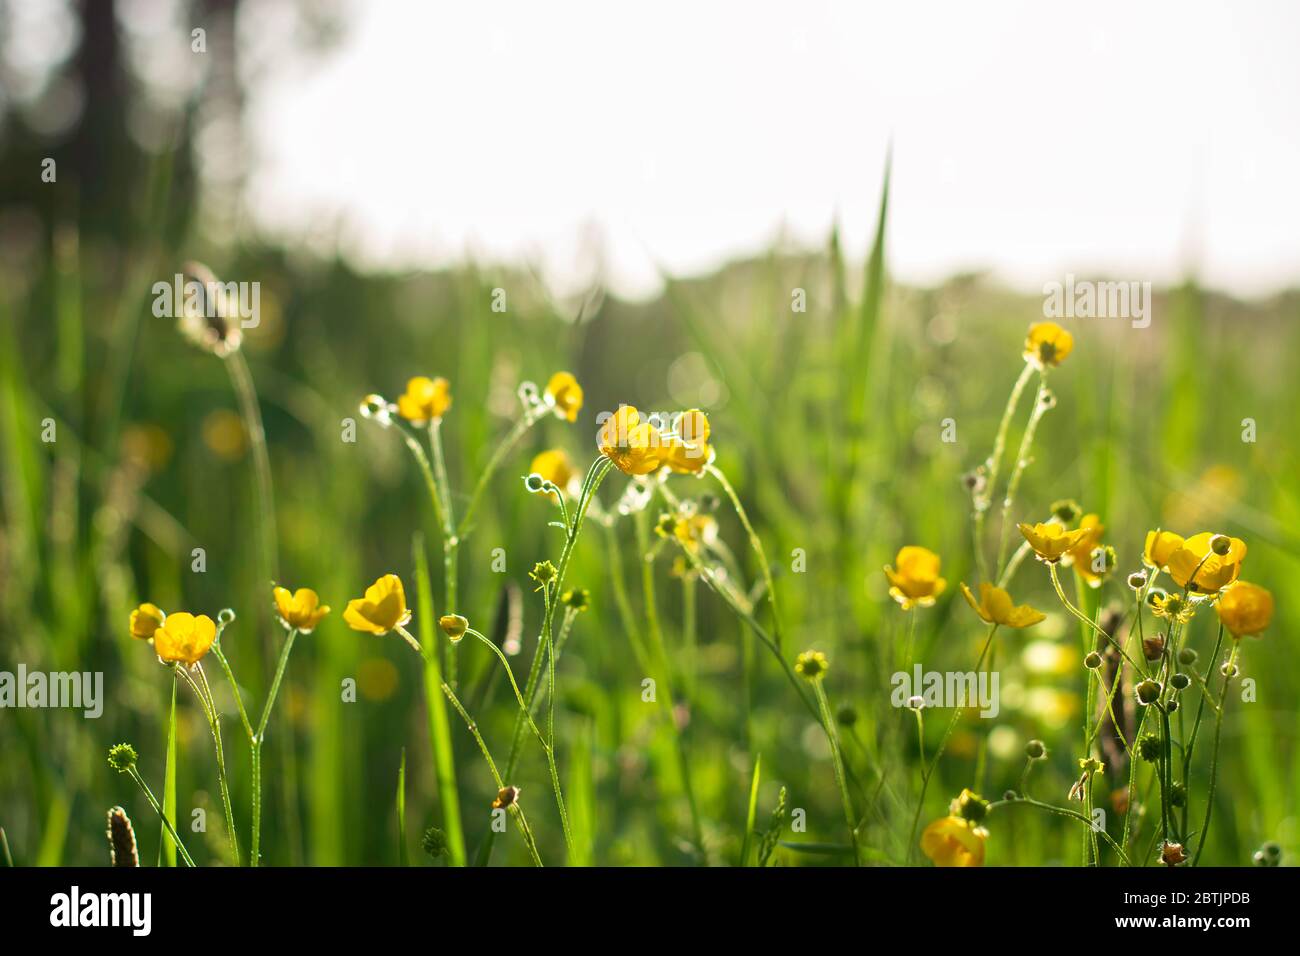 Niedriger Blickwinkel in einer gelb blühenden Butterblume Blumenwiese im Sonnenlicht während der goldenen Stunde. Ranunculus blühen auf einem Feld an einem sonnigen Tag. Stockfoto